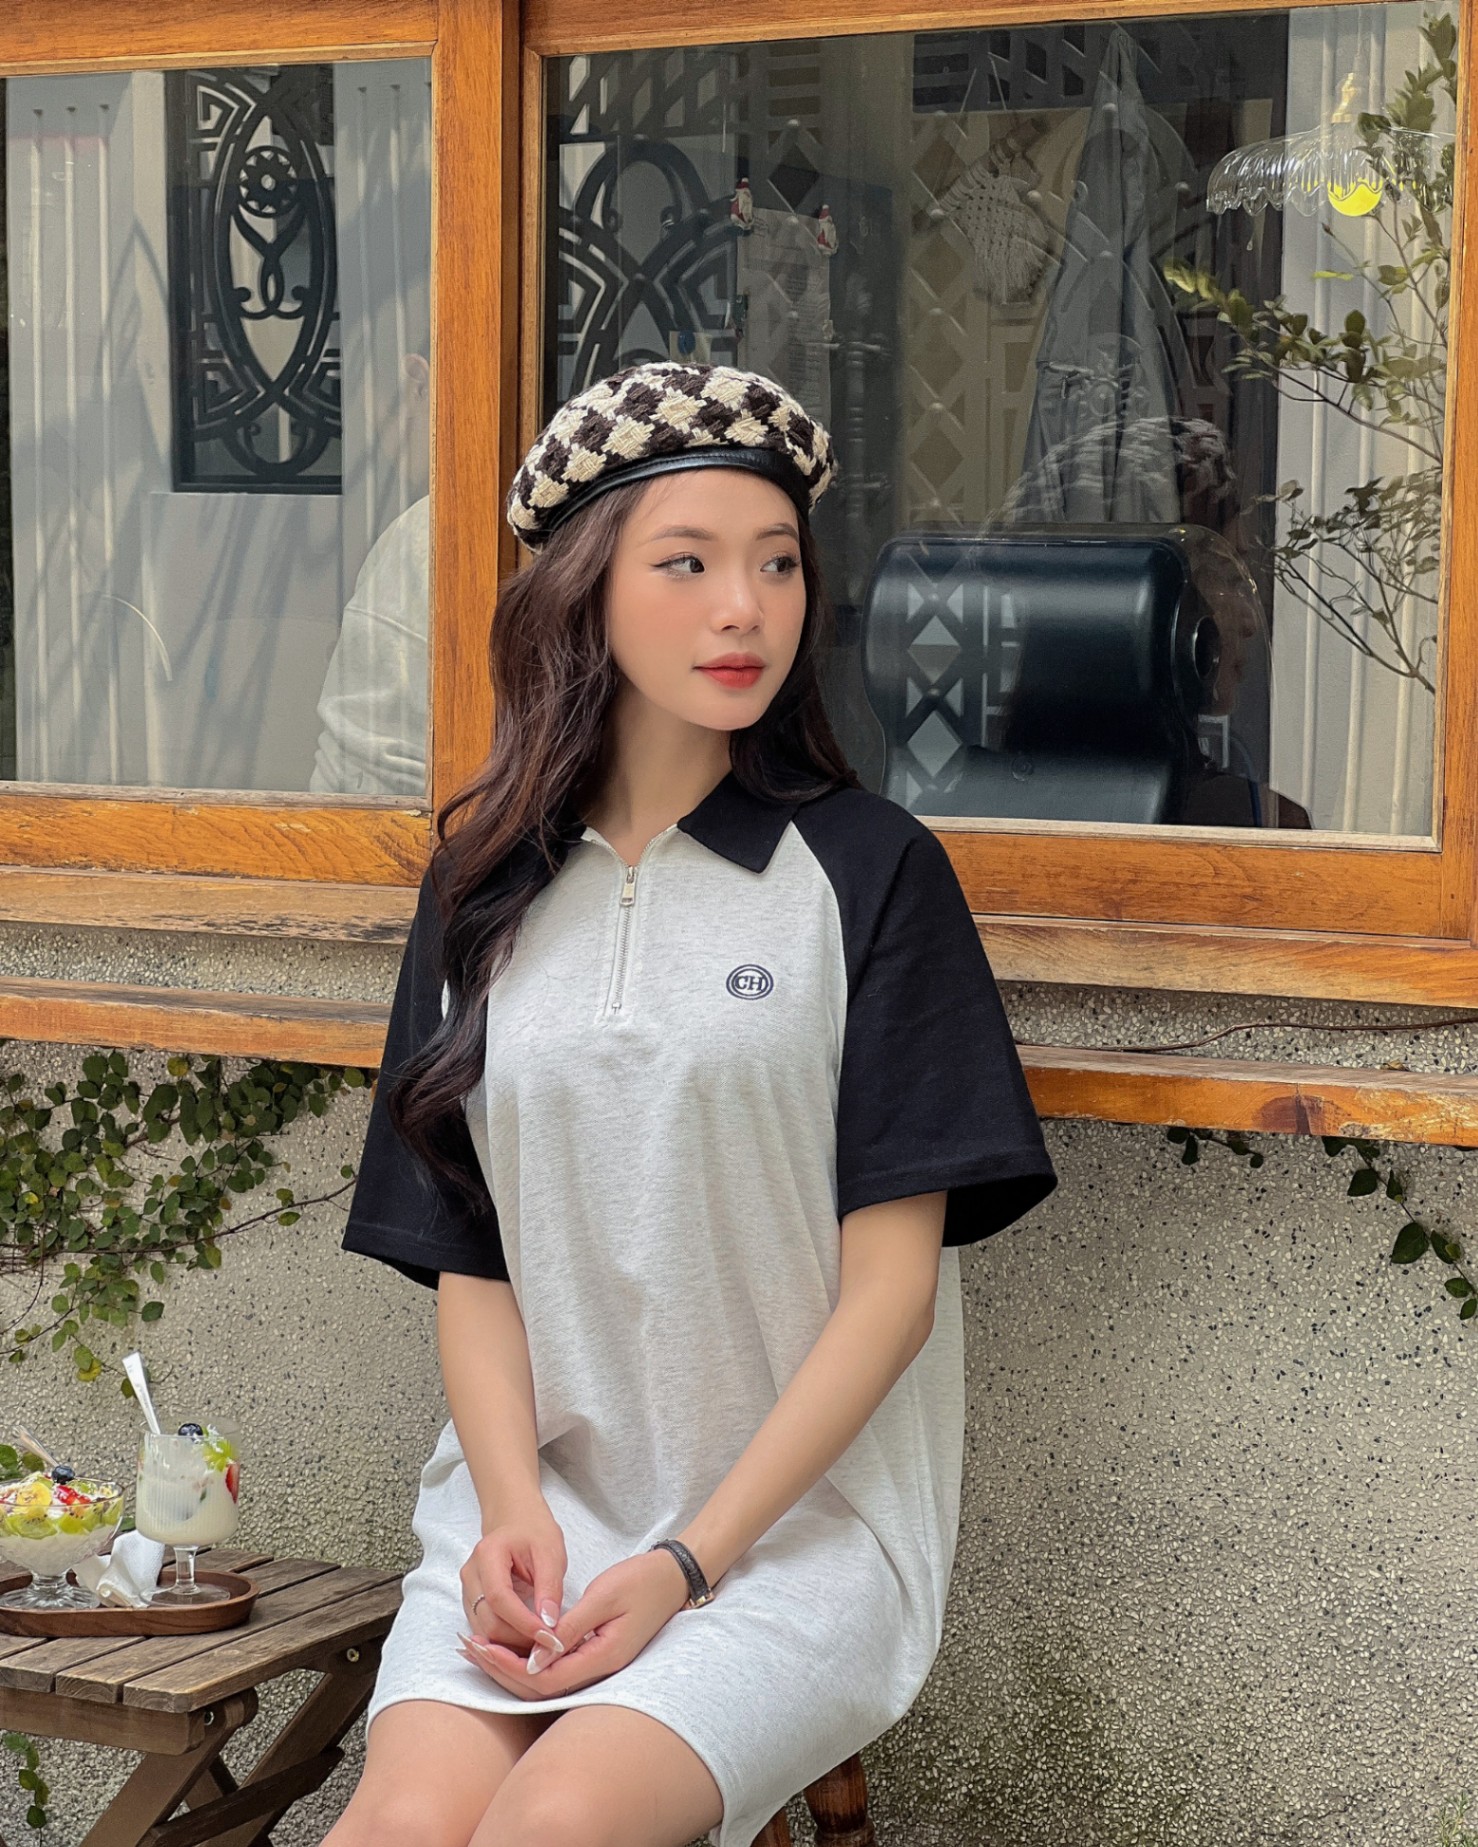 Trang phục dân tộc H'Mông nữ hồng hoa - Trang phục biểu diễn Hoa Mai